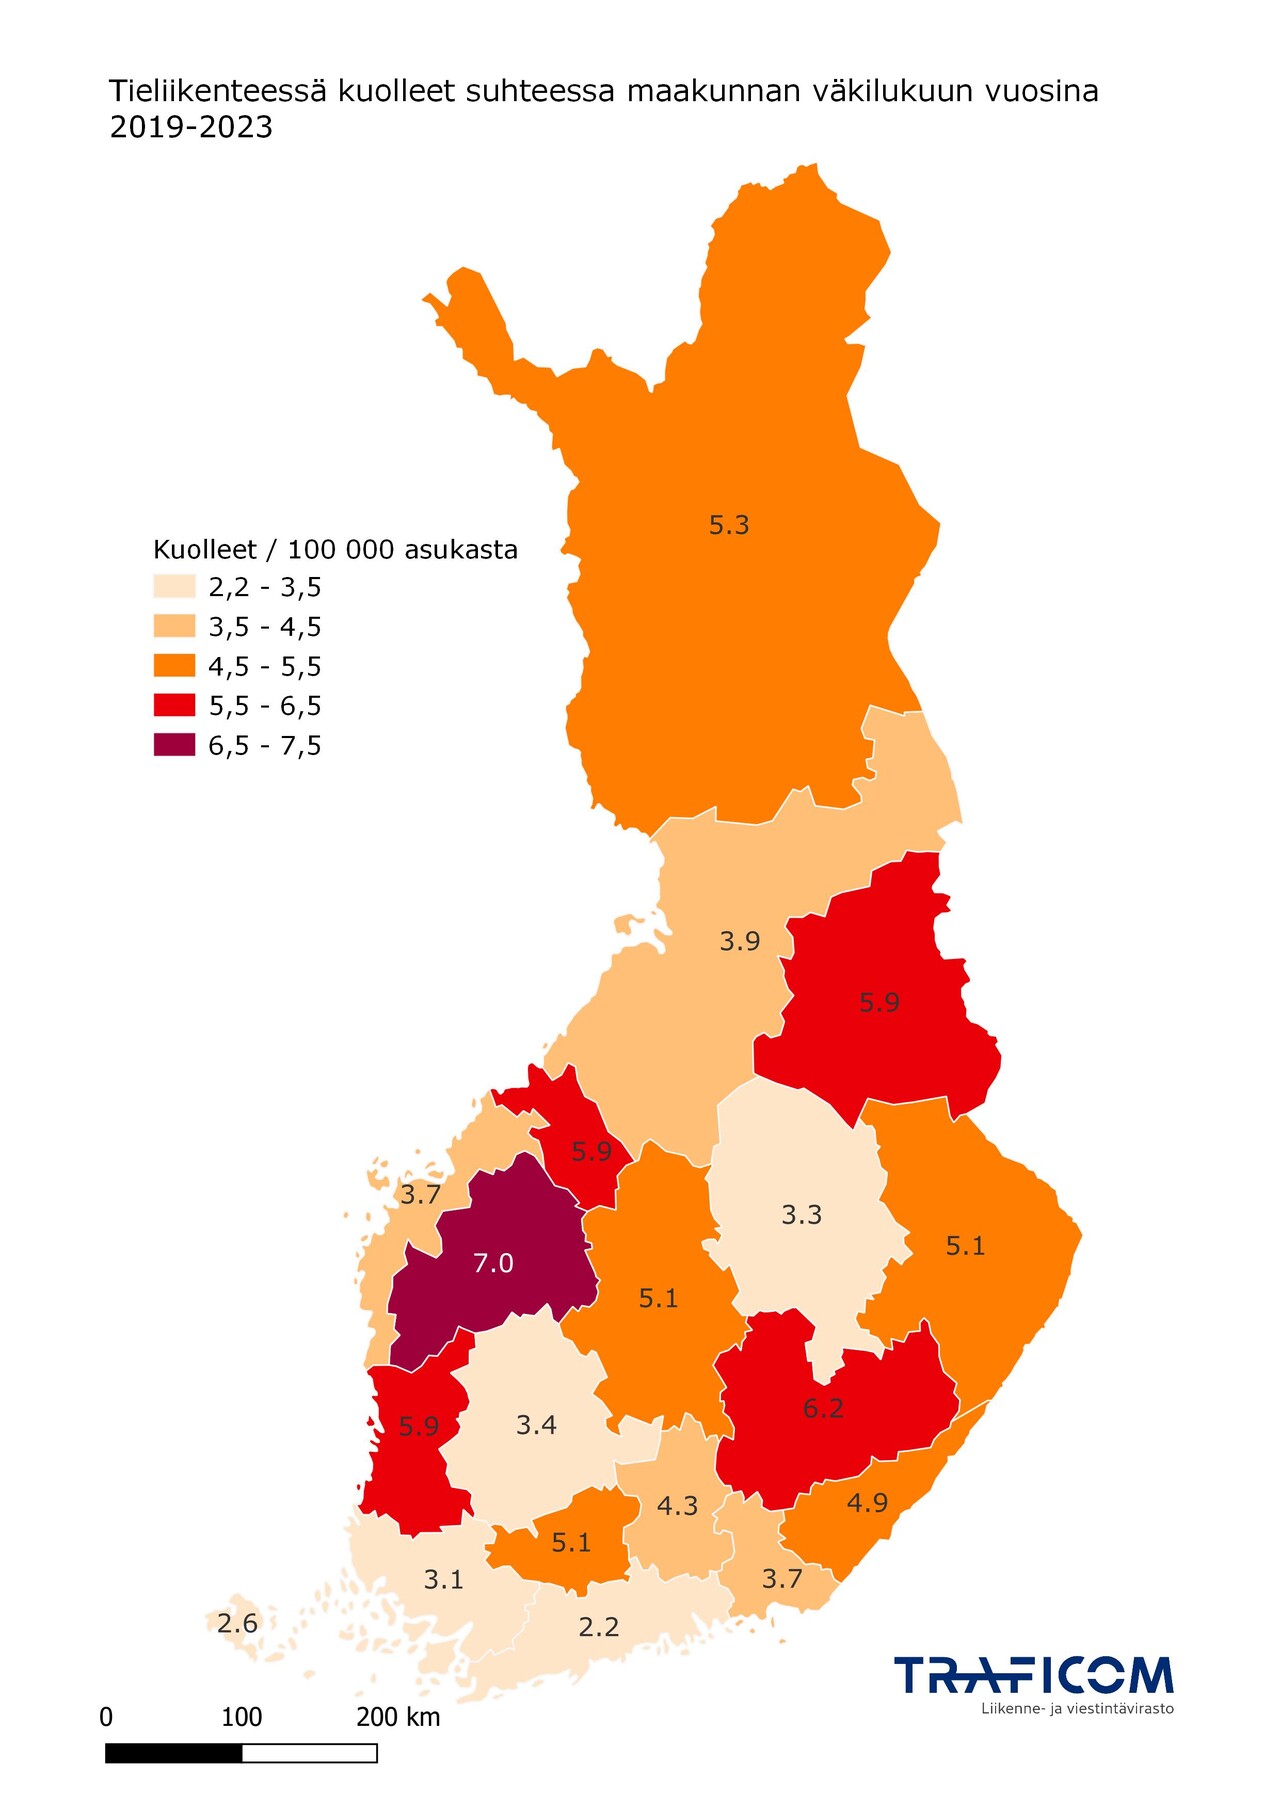 Kartta tieliikenteessä kuolleista suhteessa maakuntien väkilukuun vuosina 2019-2023